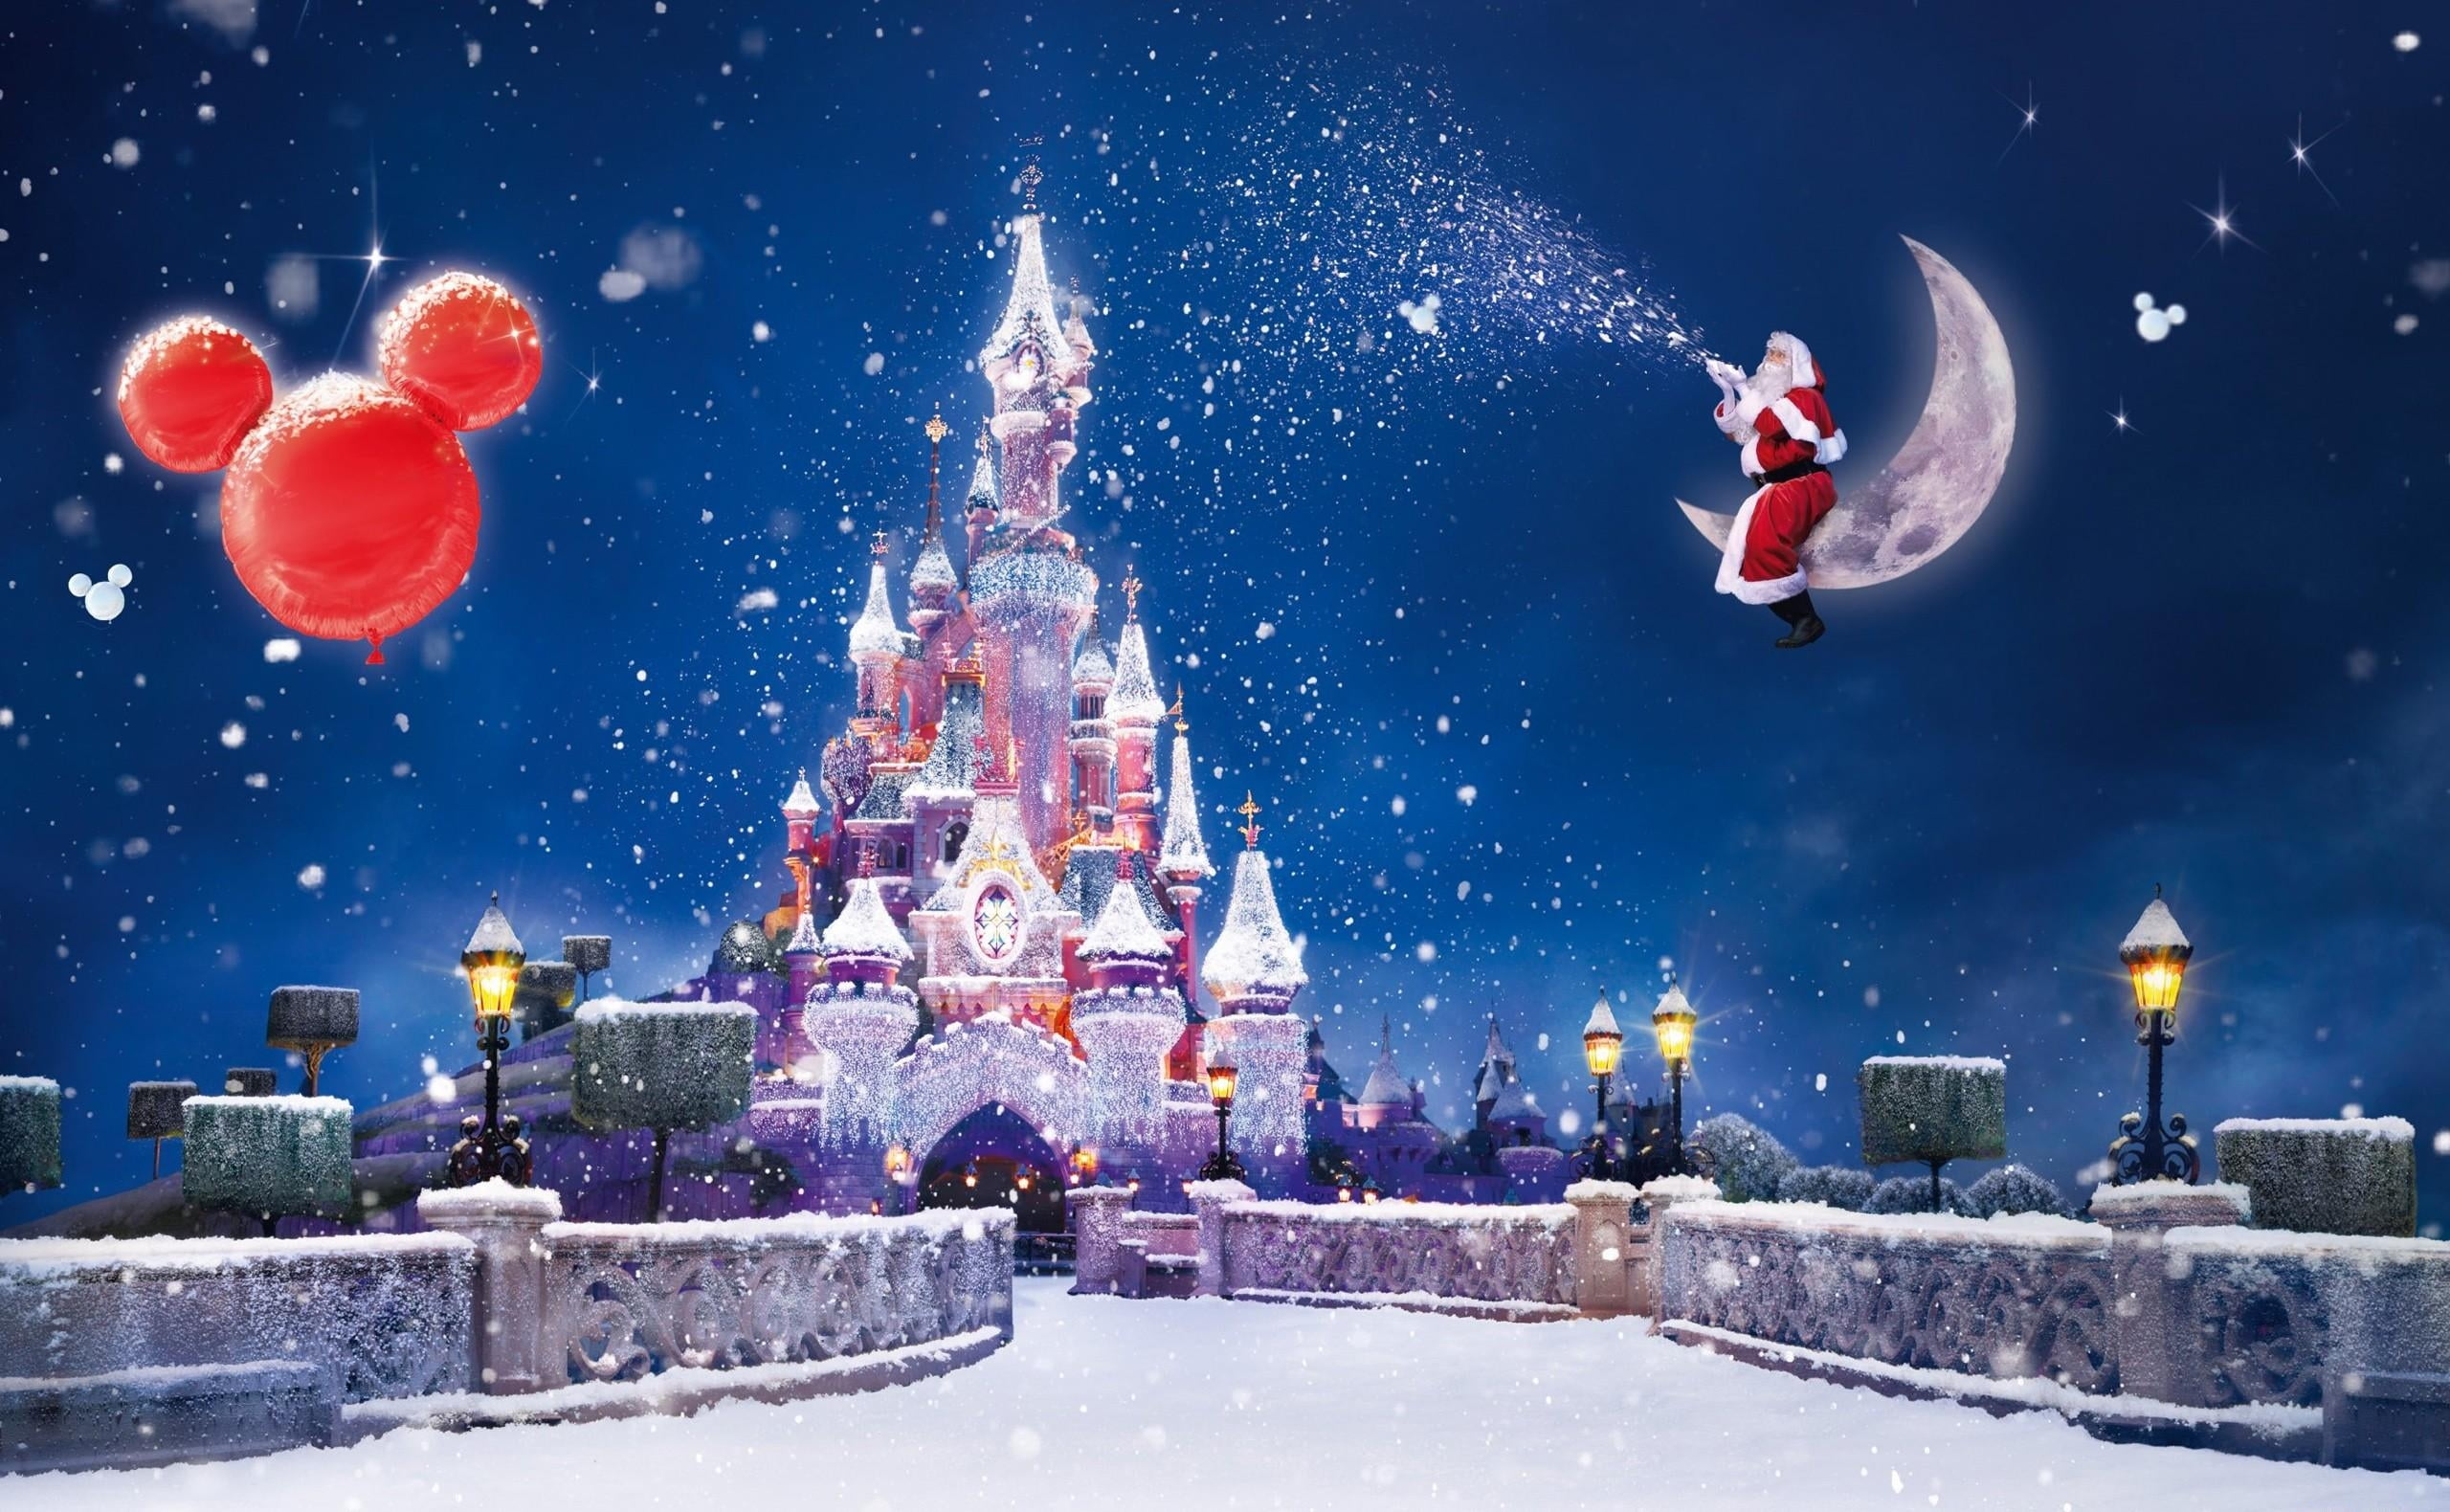 Disneyland Castle Christmas e-poster